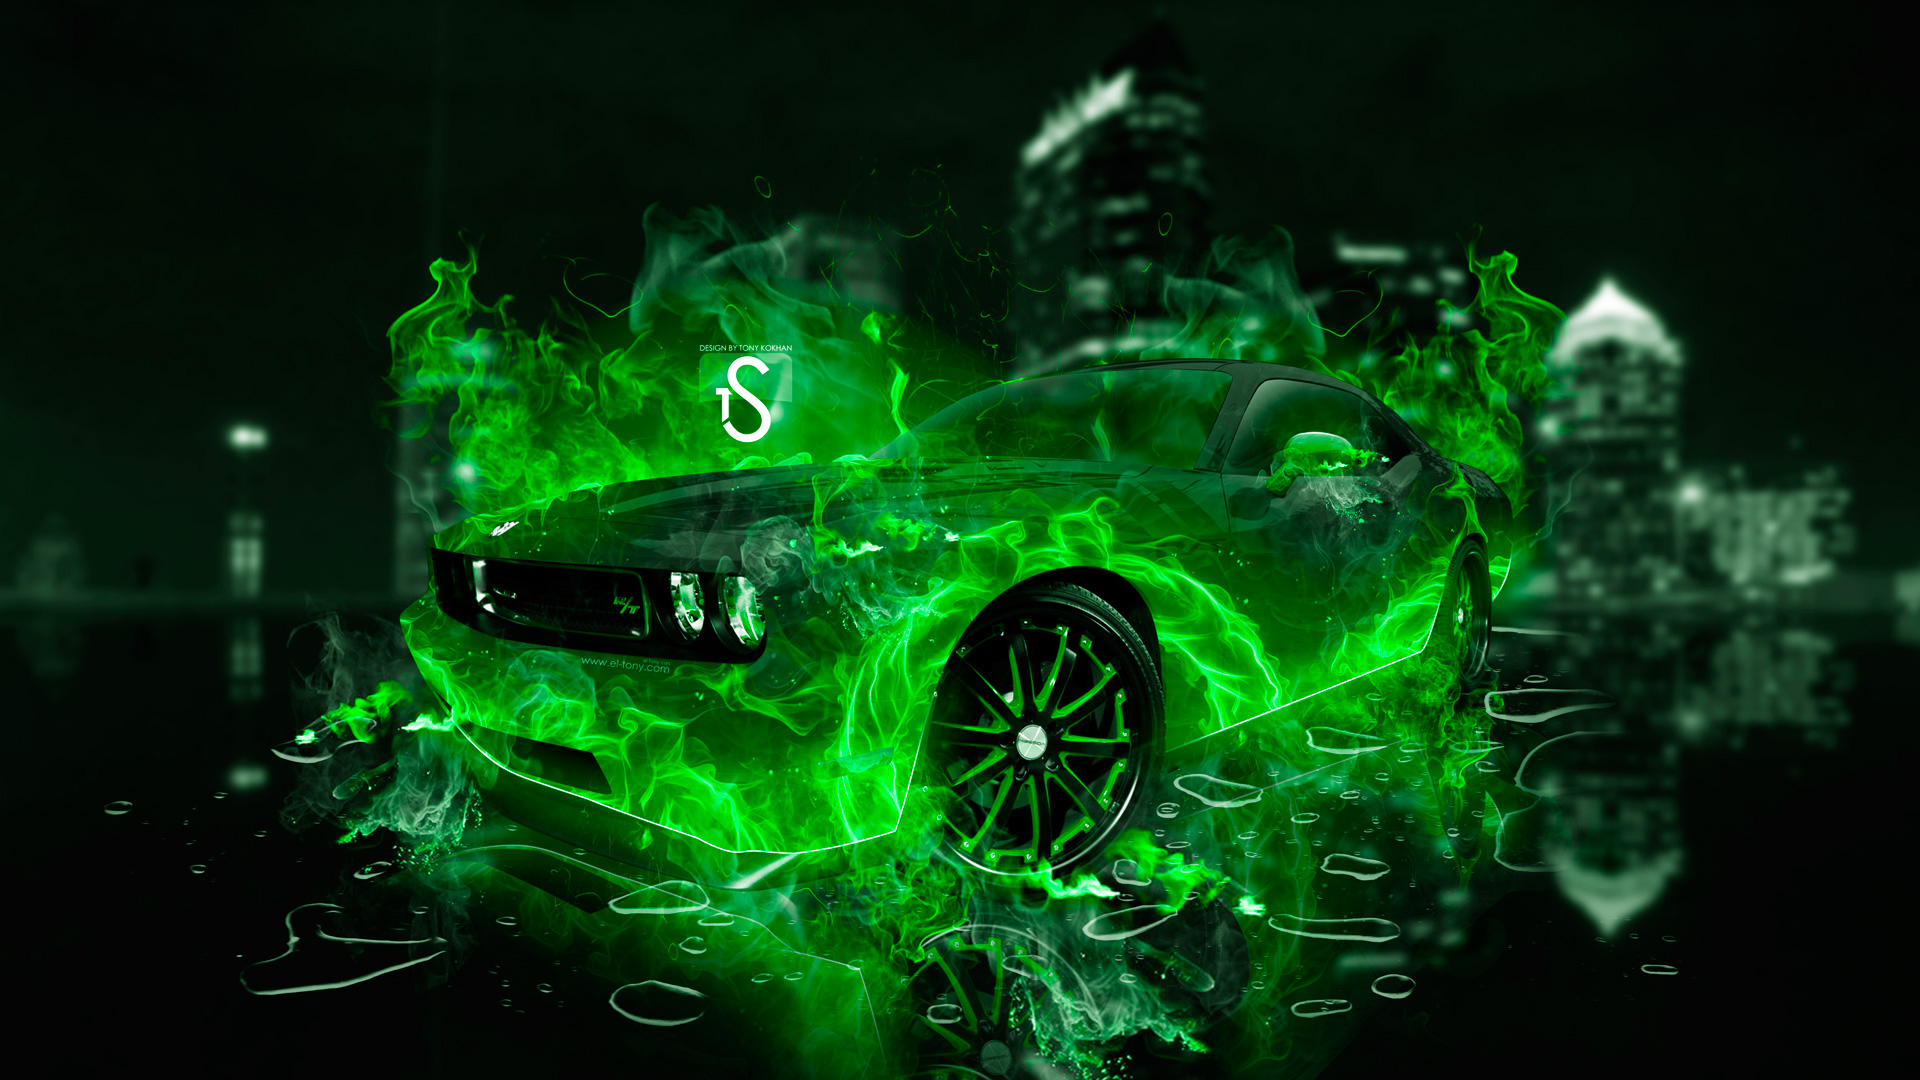 Неоново зелёная машина на чёрном фоне